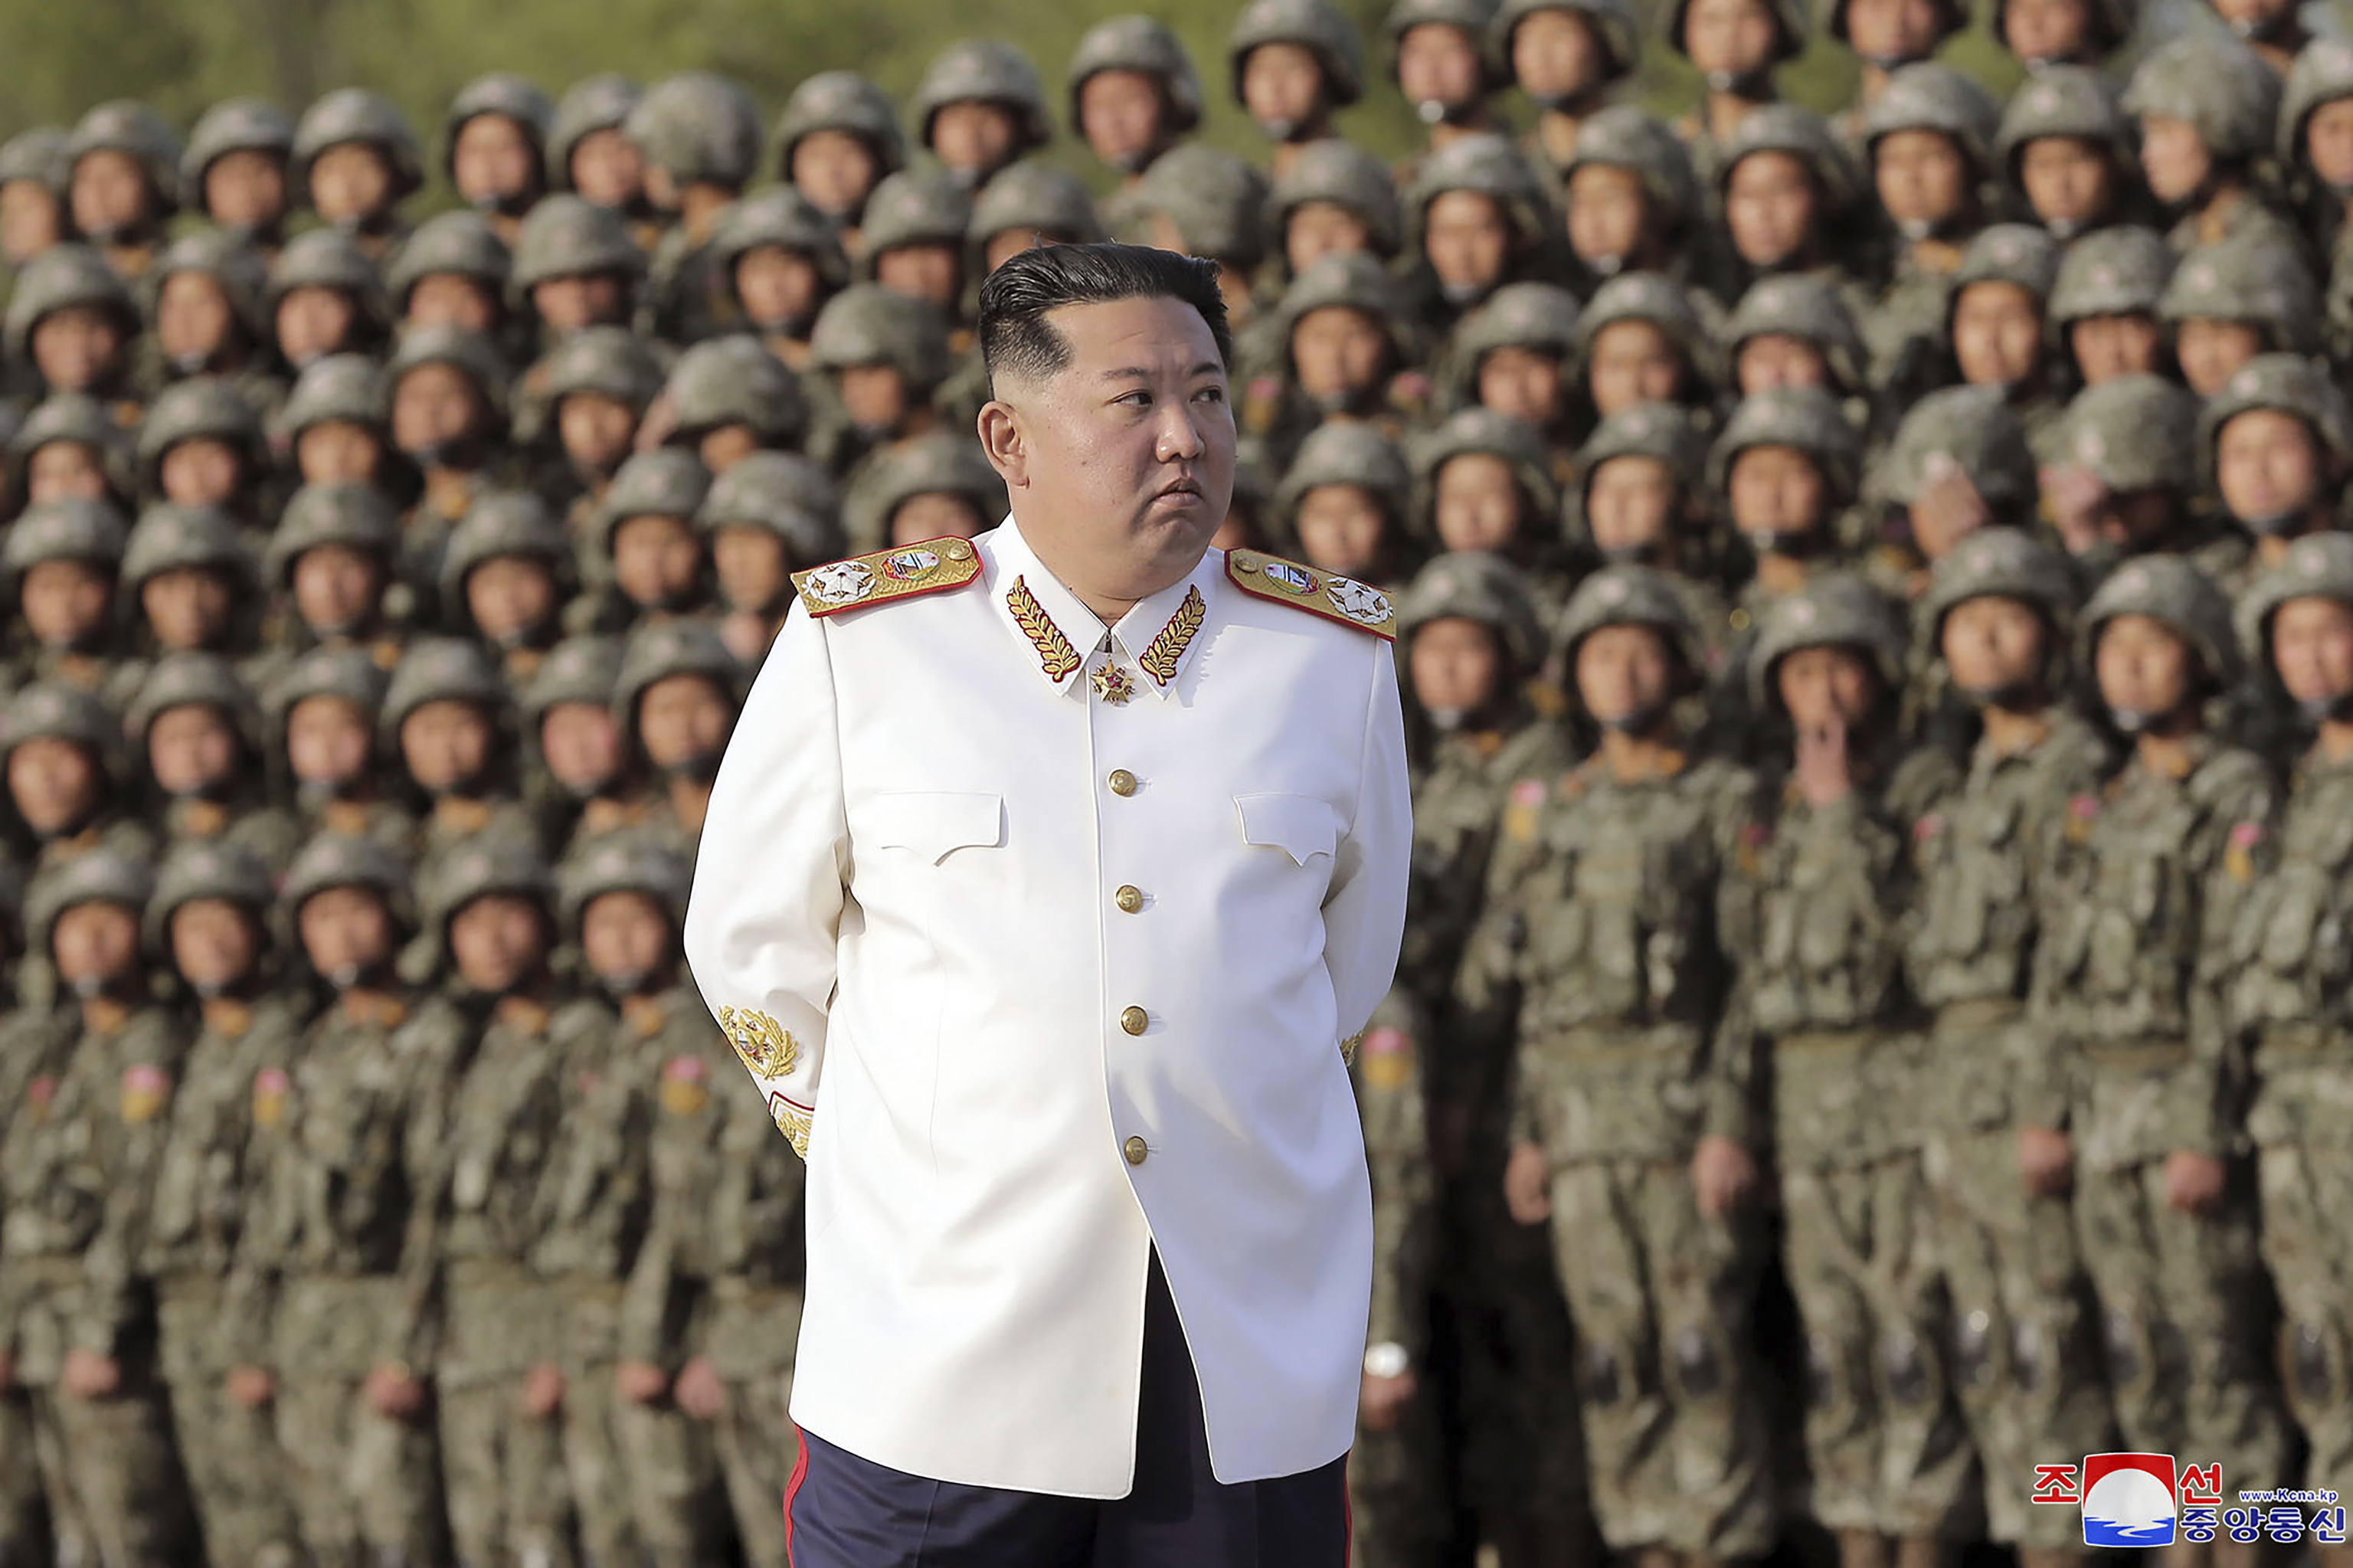 El líder norcoreano Kim Jong Un durante un reciente desfile militar.